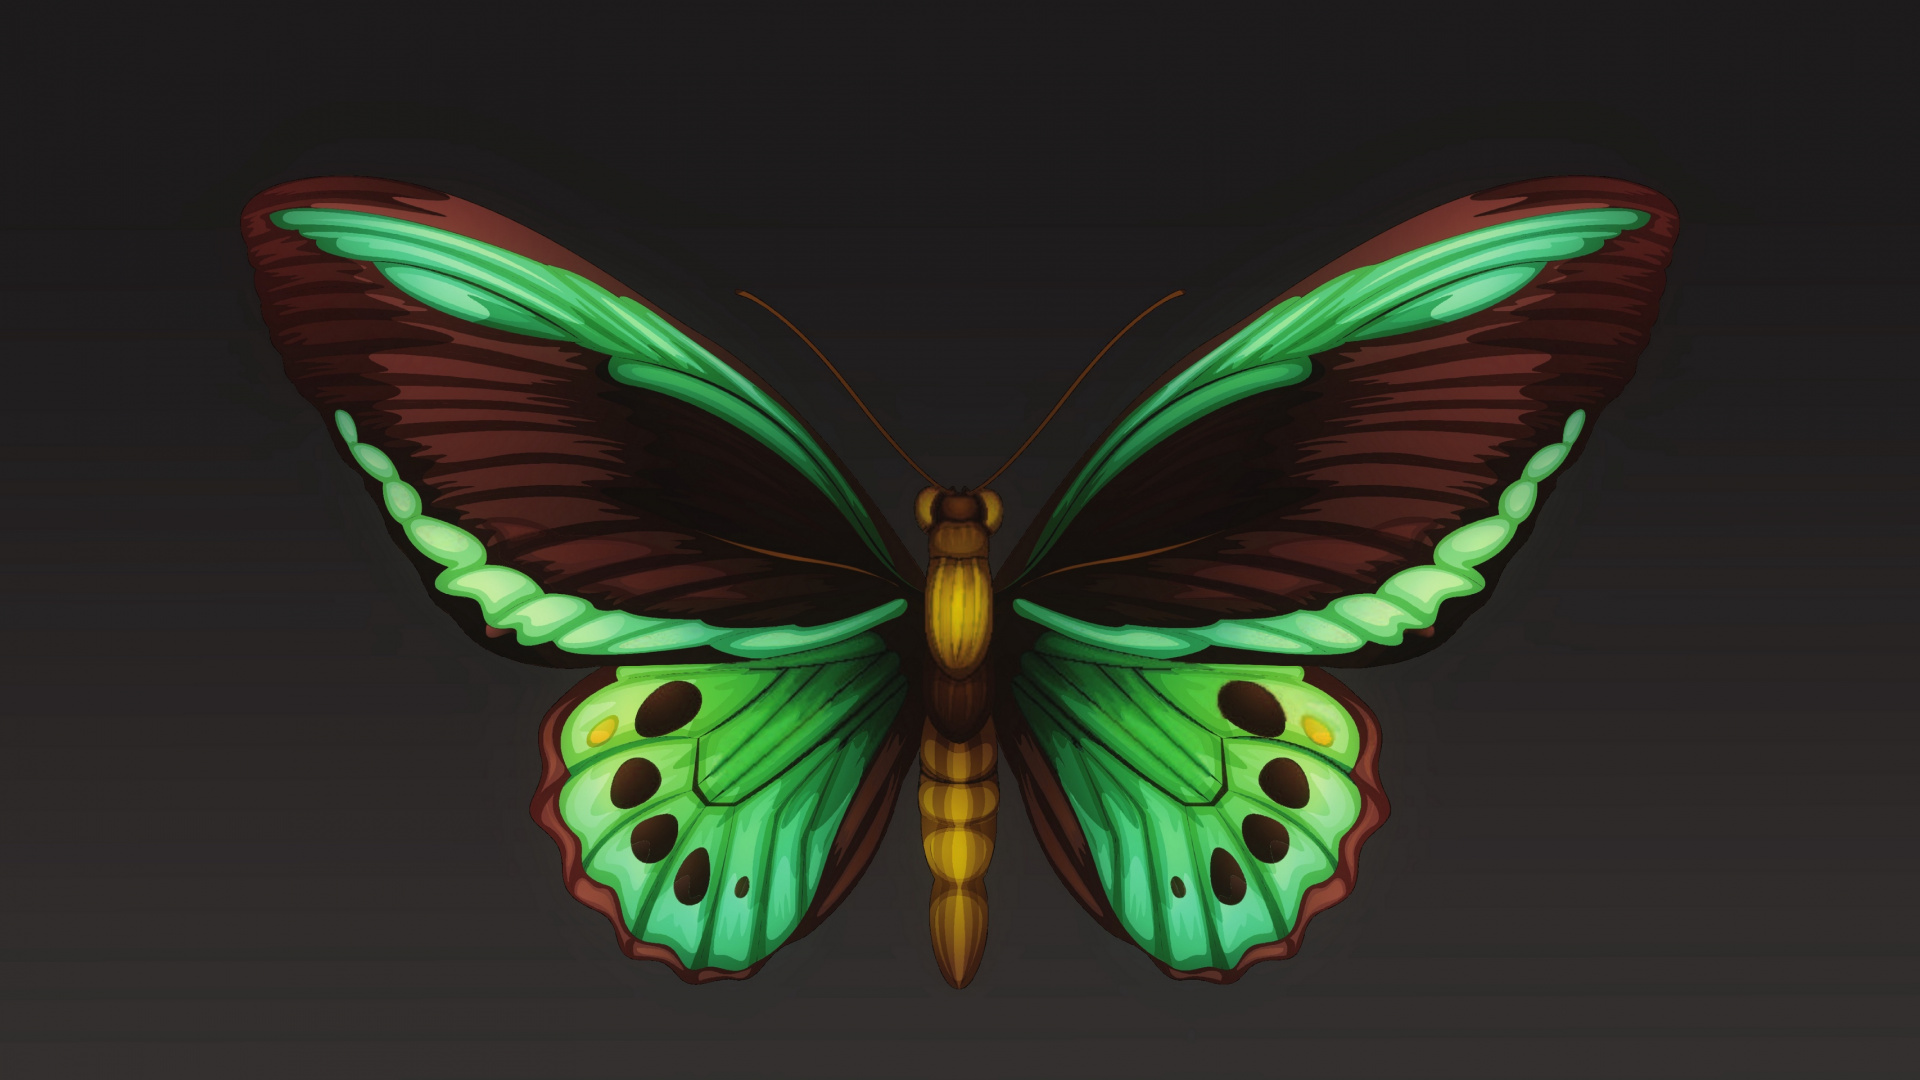 飞蛾和蝴蝶, 昆虫, 翼, 对称, 节肢动物 壁纸 1920x1080 允许